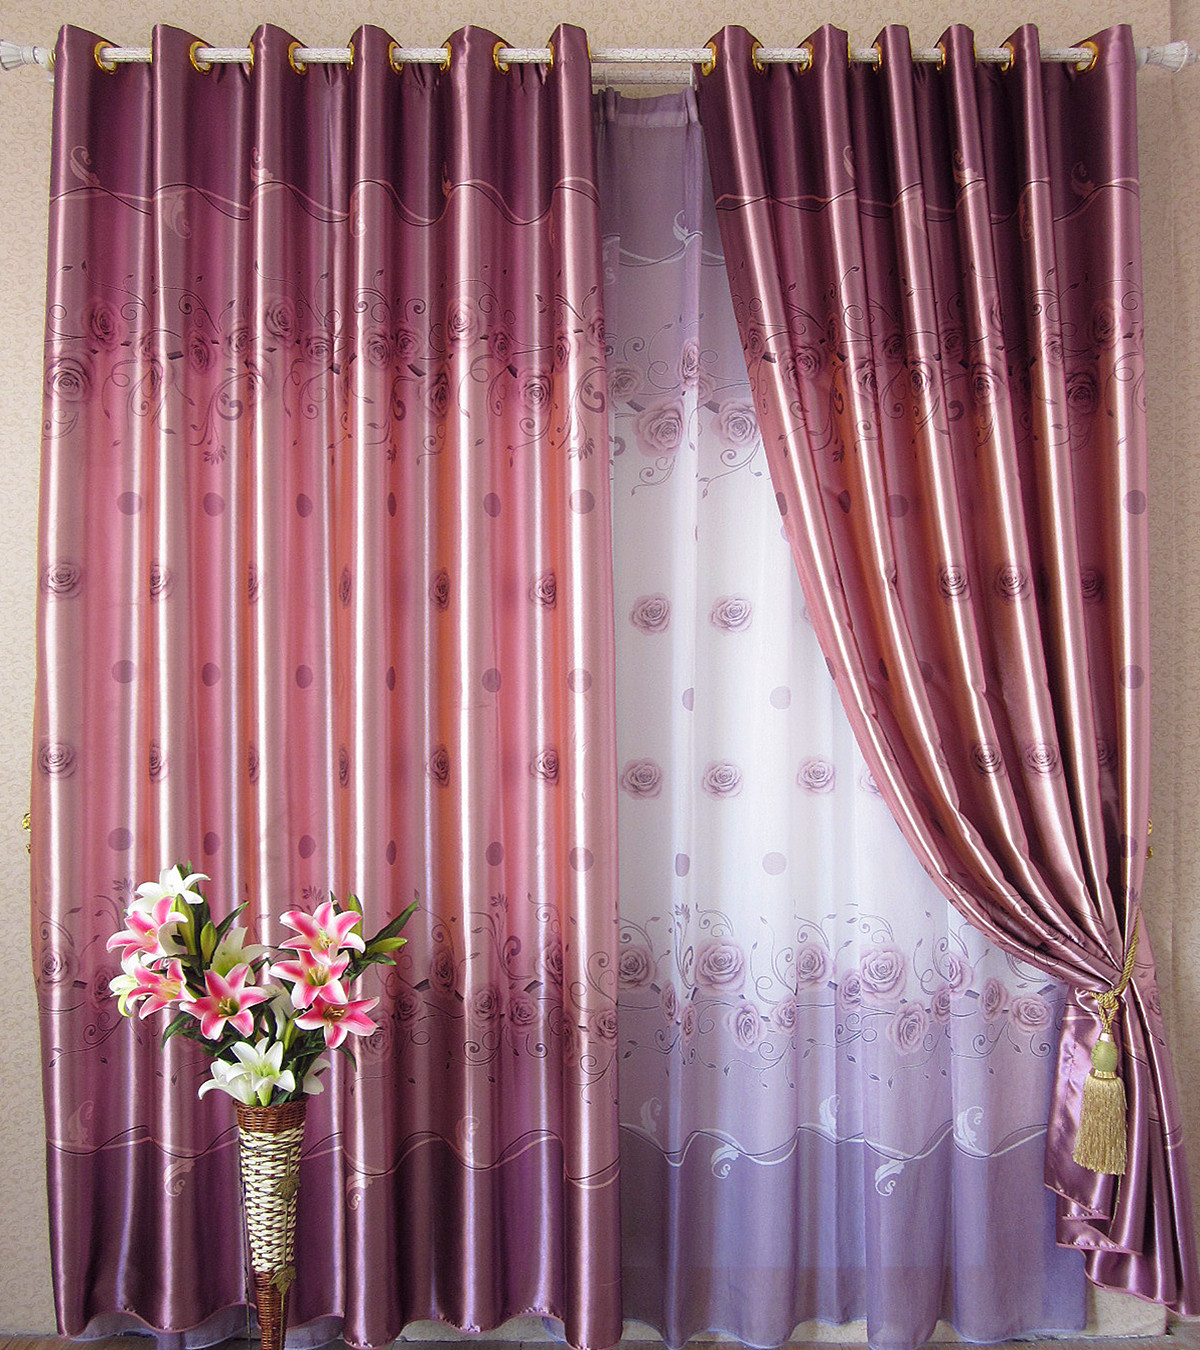 九洲布艺 高档一级遮光遮阳布 紫色玫瑰 窗帘定制 加厚防晒隔热